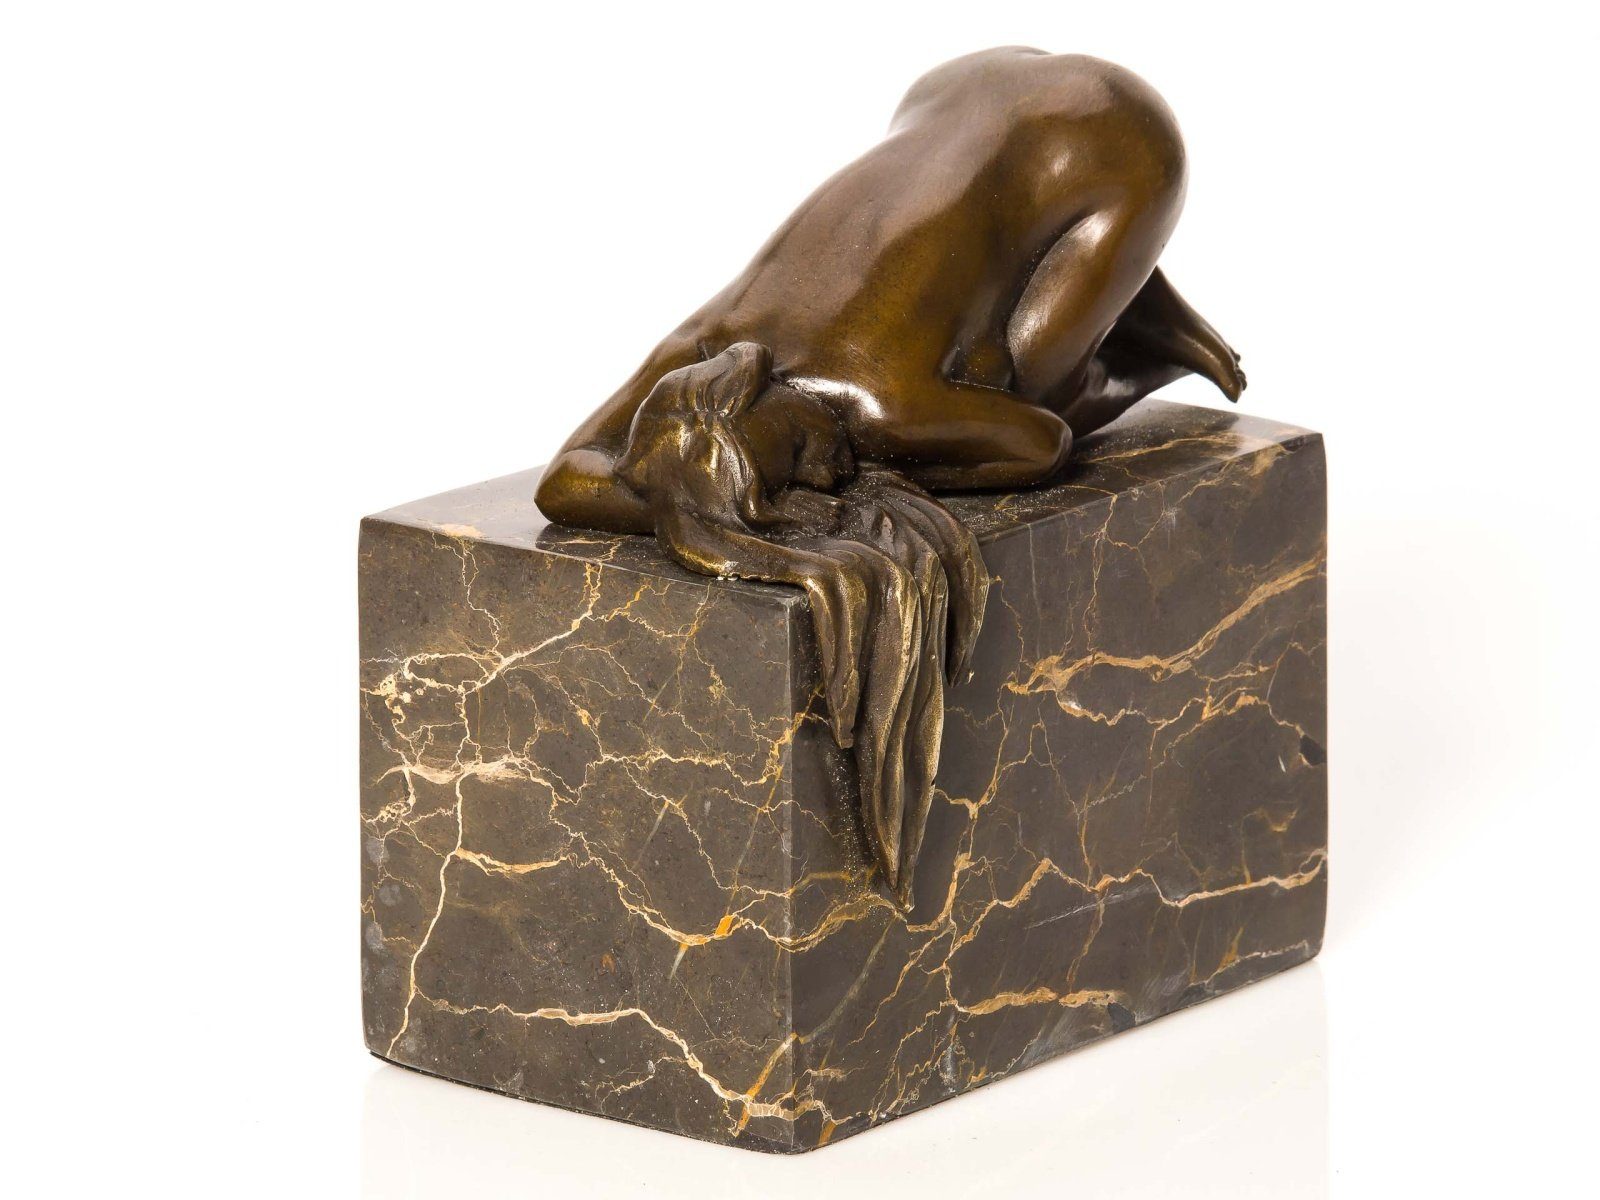 Skulptur Erotik Skulptur Frau Figur Aubaho Nude Bronzeskulptur Bronzefigur Akt Bronze